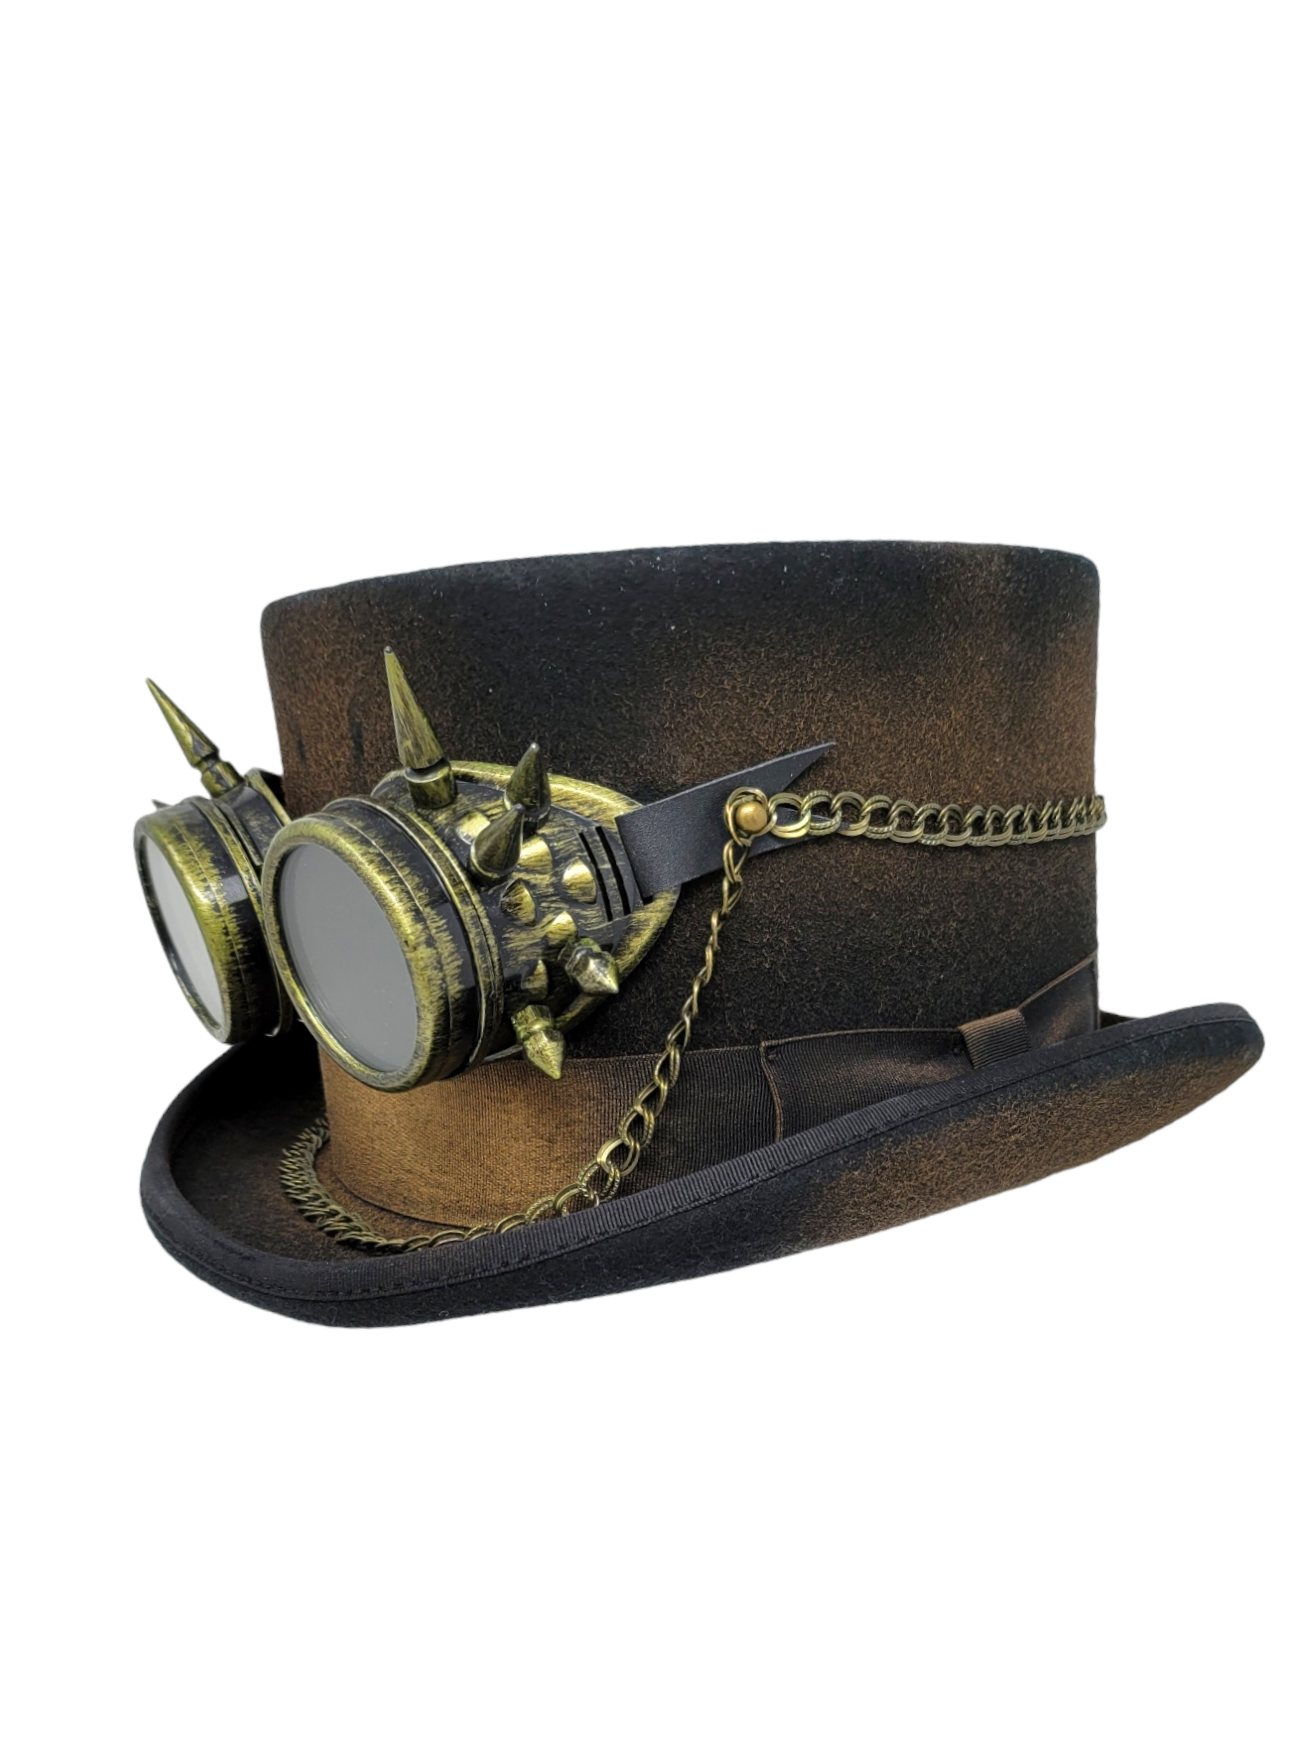 Epoch Steampunk Wool Felt High Crown Top Hat W/ Steampunk Goggles